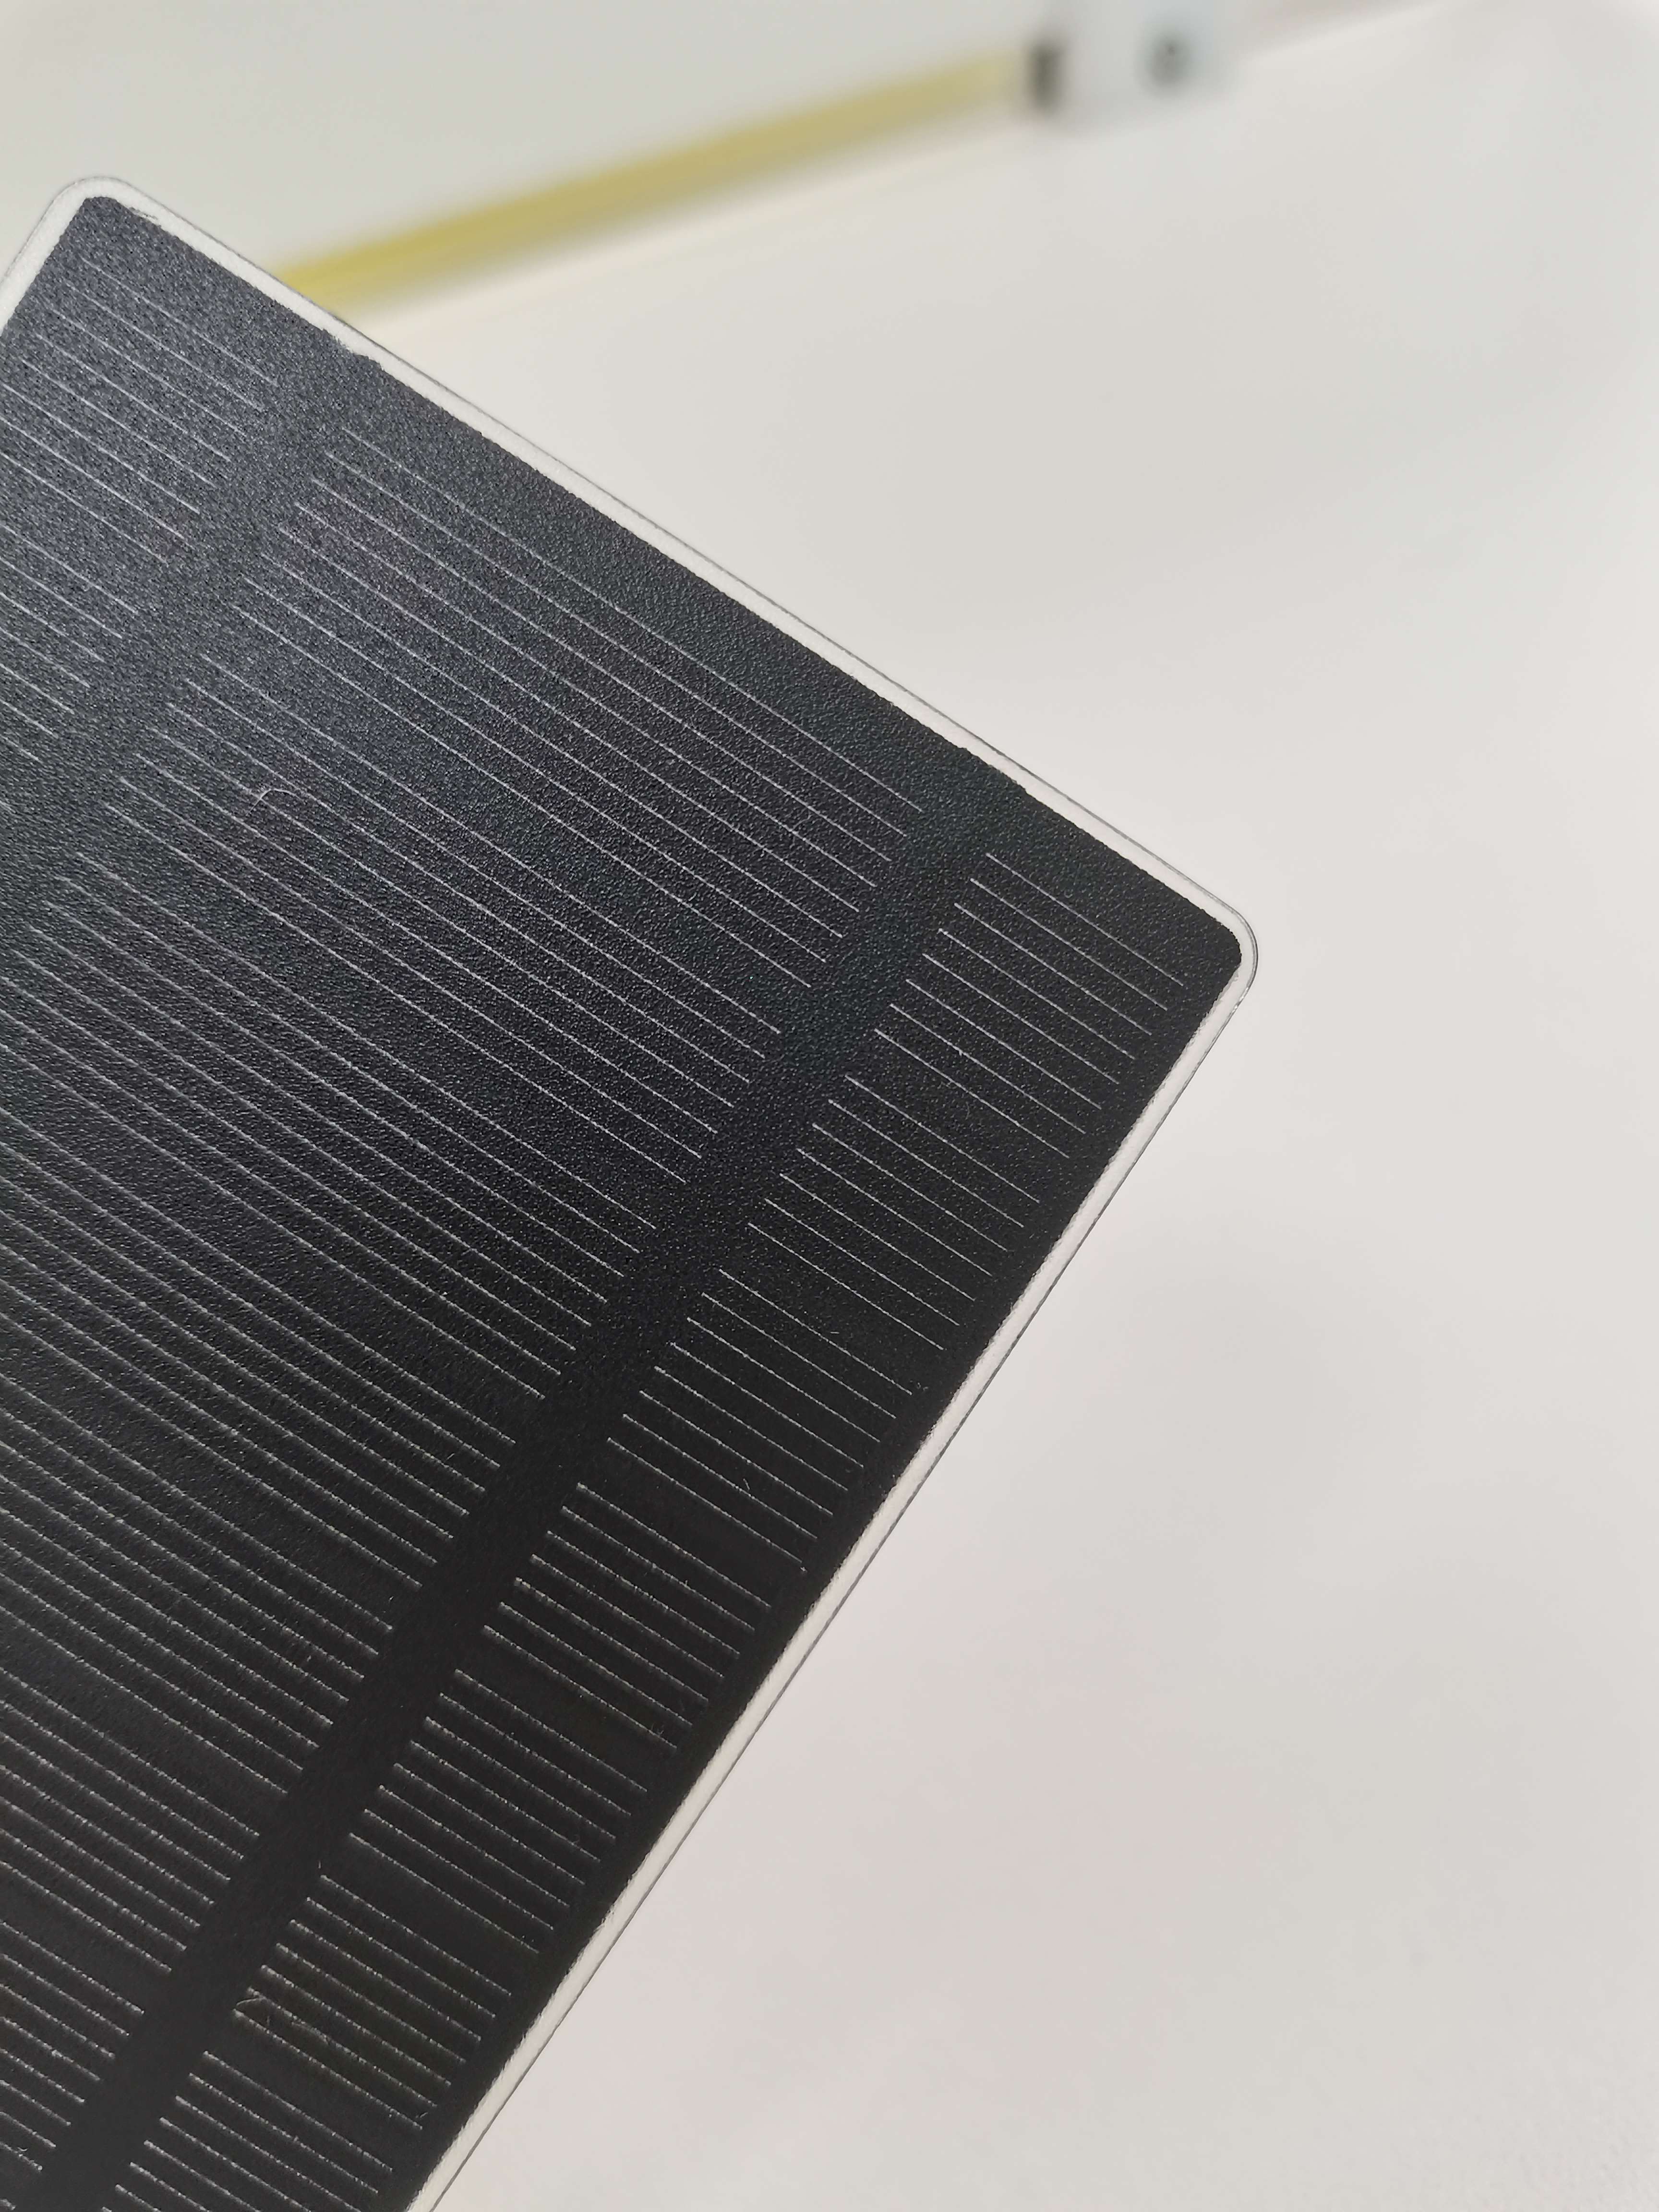 深圳太阳能板定制批发 太阳能板厂家定制批发 单晶多晶太阳能板定制批发图片